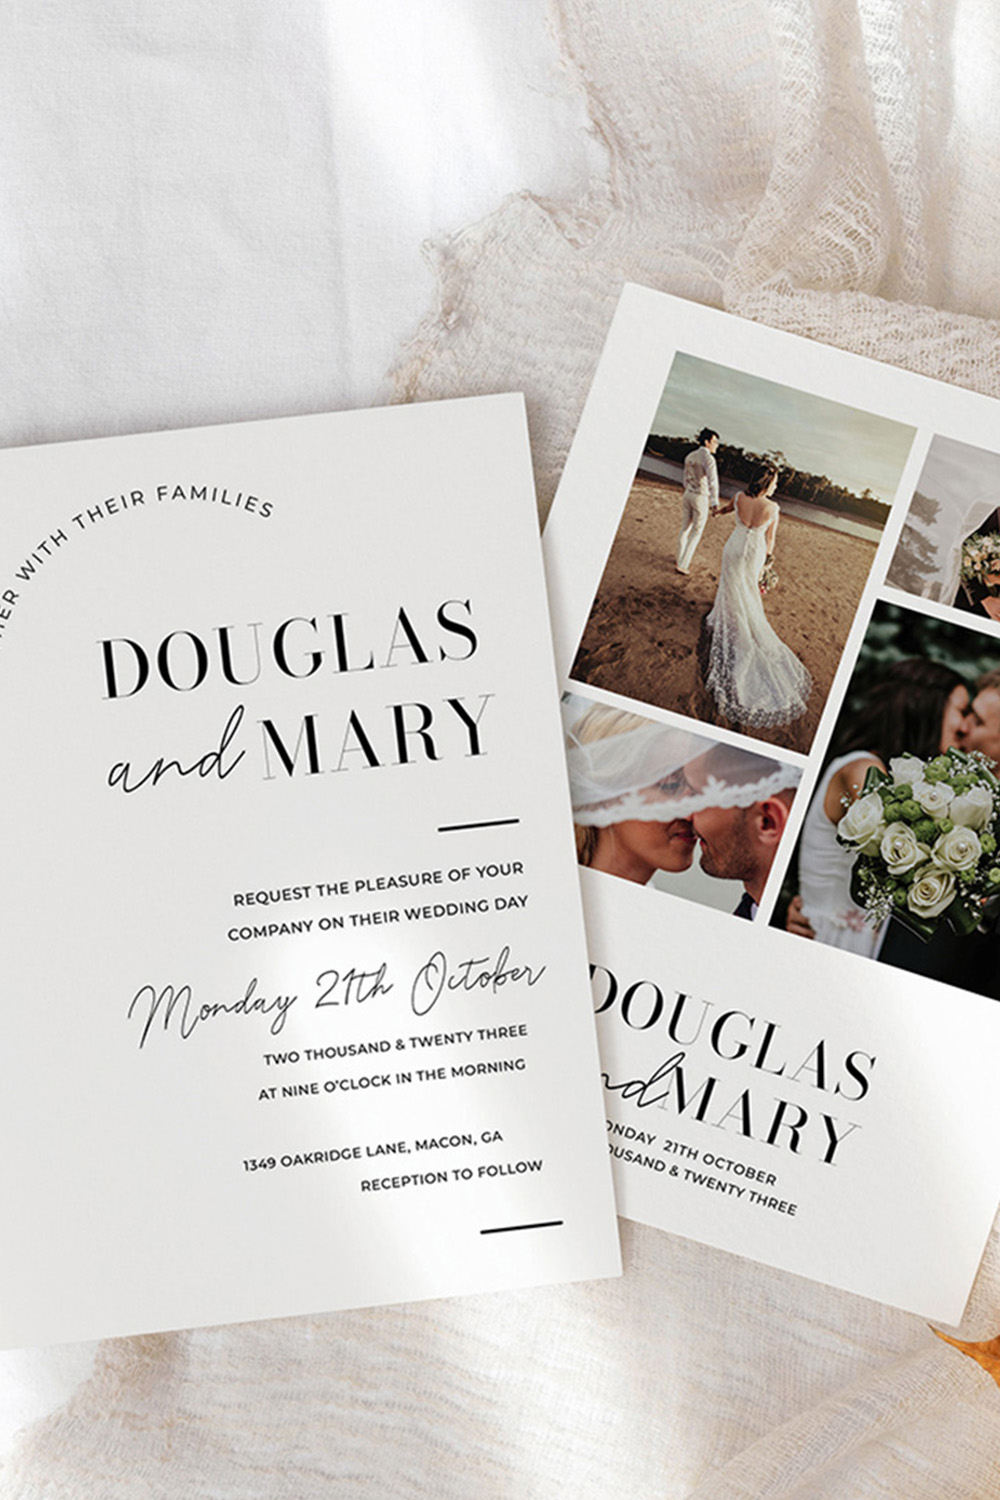 Minimalist Wedding Invitation Template Pinterest Collage image.